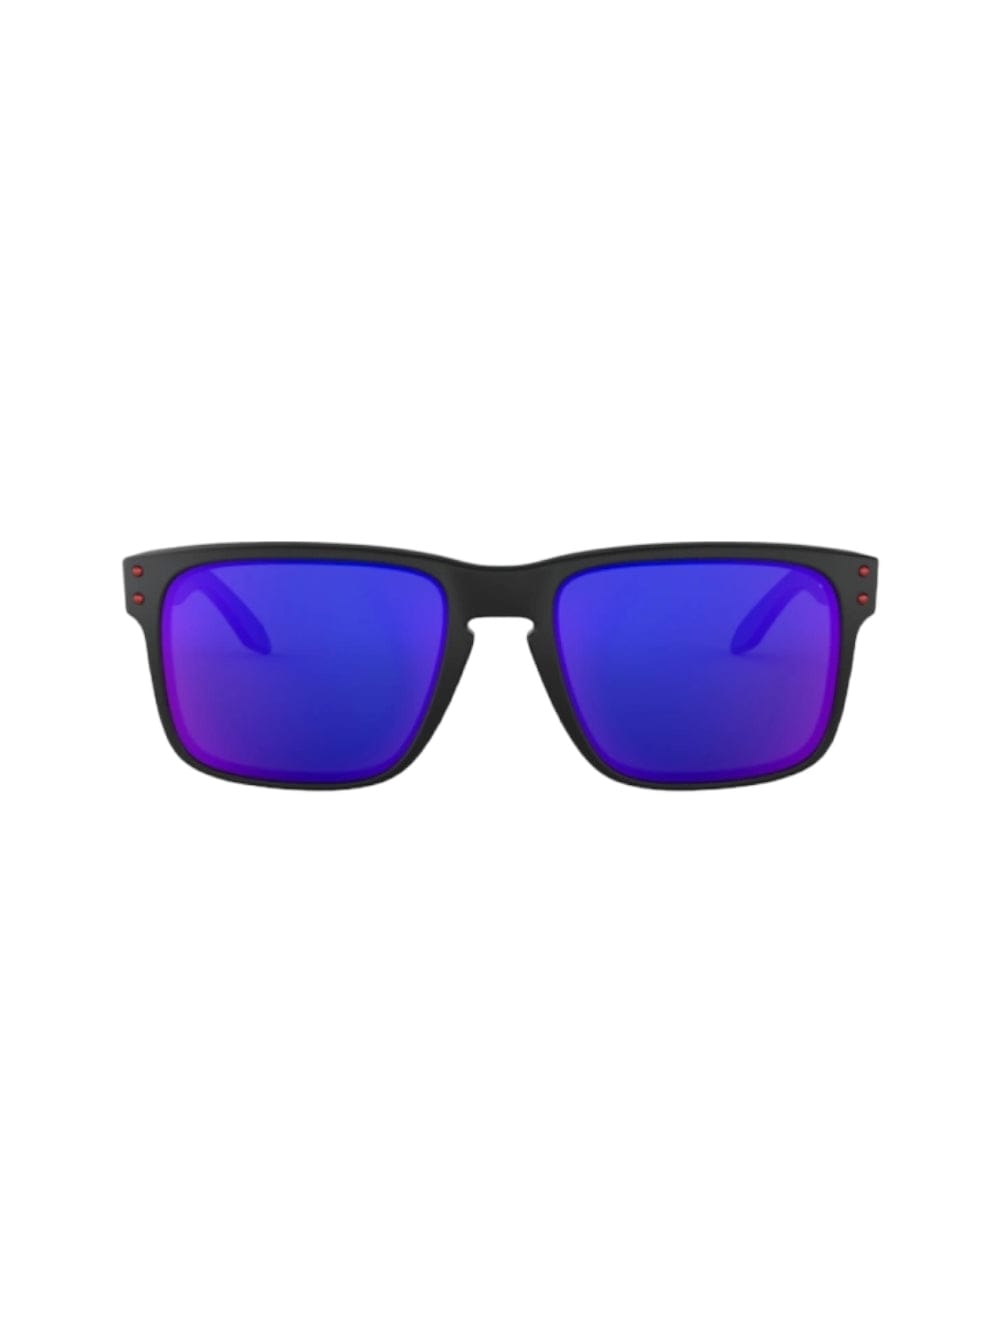 Shop Oakley Holbrook - 9102 Sunglasses